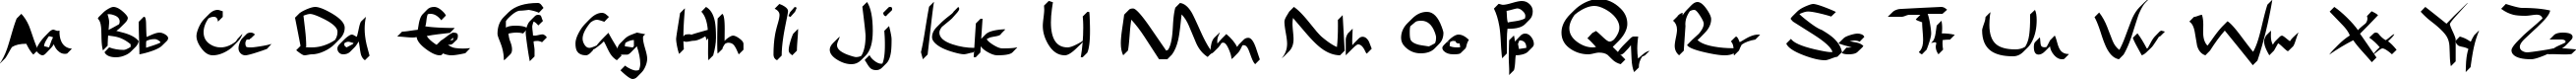 Пример написания английского алфавита шрифтом Dael Calligraphy